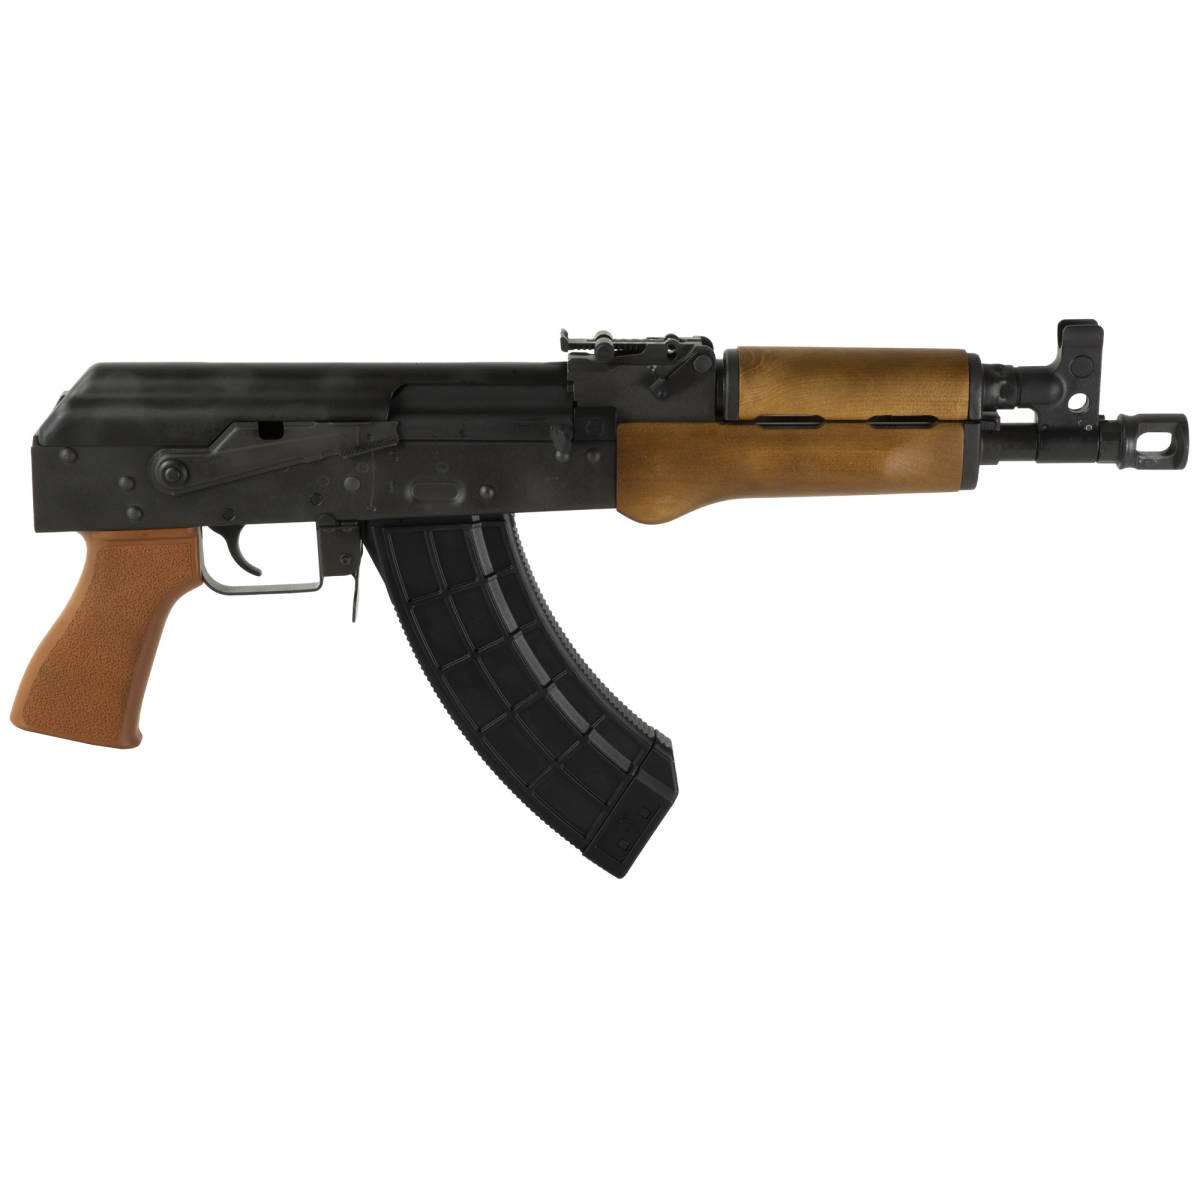 CENTURY DRACO AK-47 PISTOL VSKA 7.62X39 RAK1 TACTICAL AK-img-1